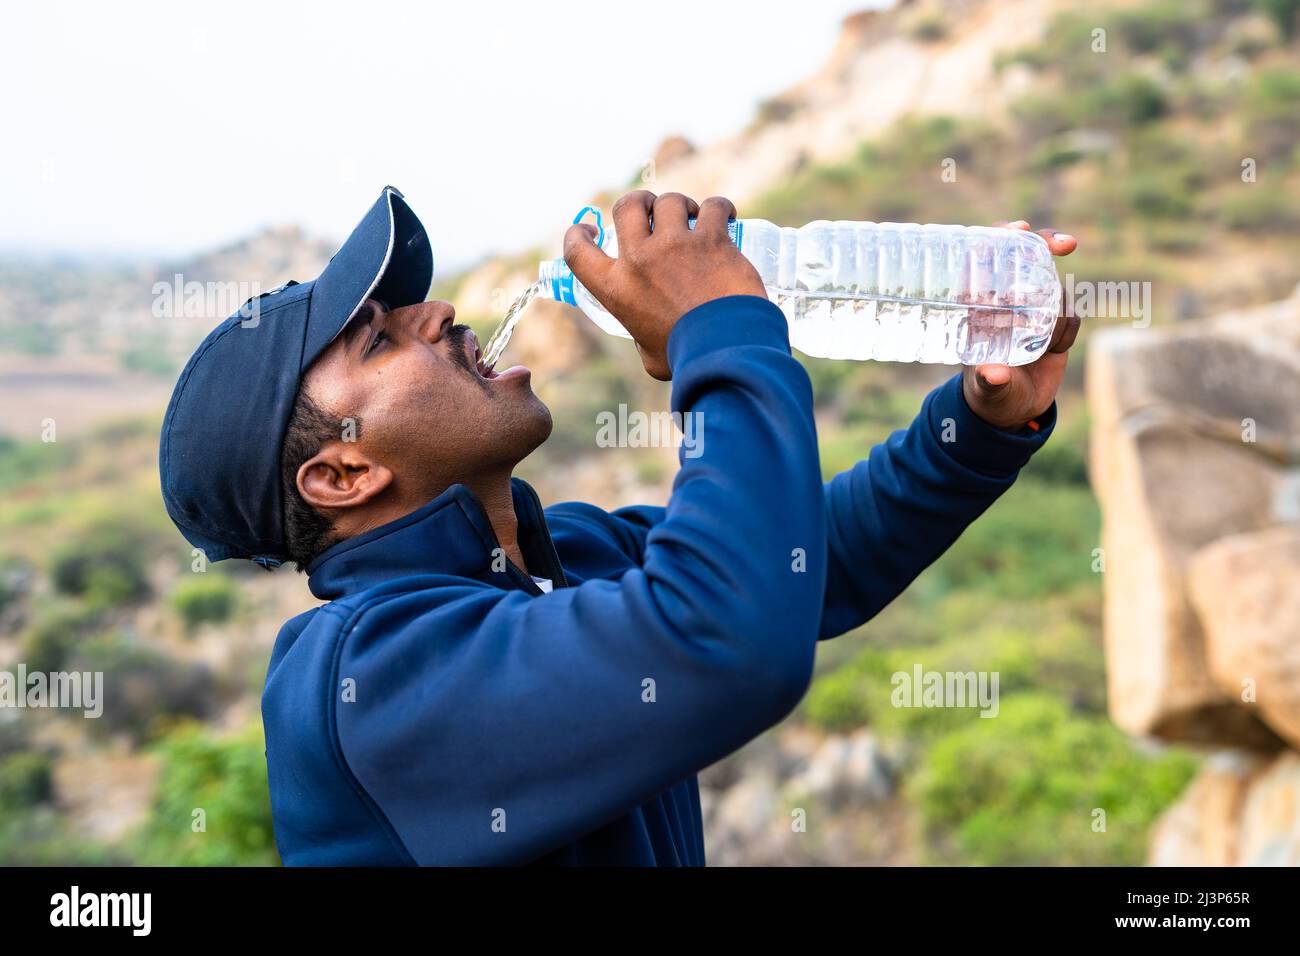 Durstiger Wanderer, der im Sommer auf dem Hügel trinkt - Konzept der Entspannungswärmewelle und gesunder Lebensstil Stockfoto